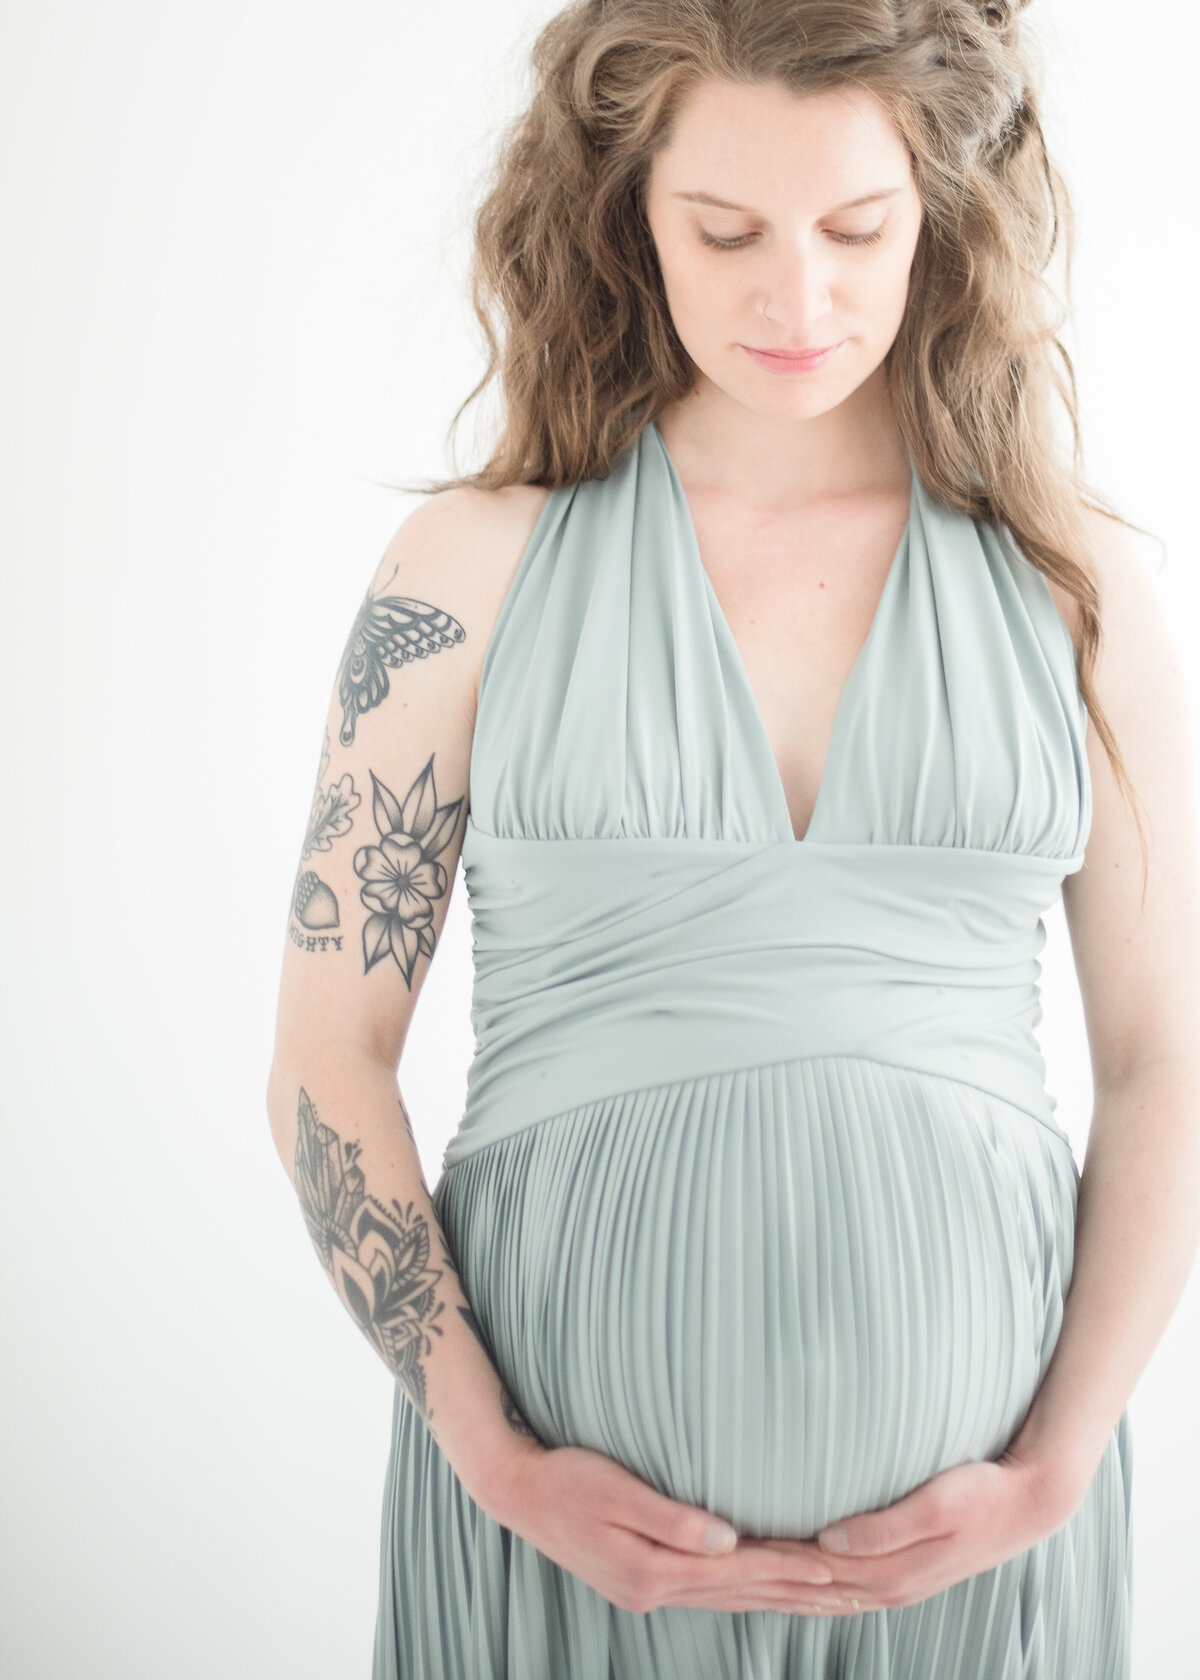 Maternity Photographer Rochester NY